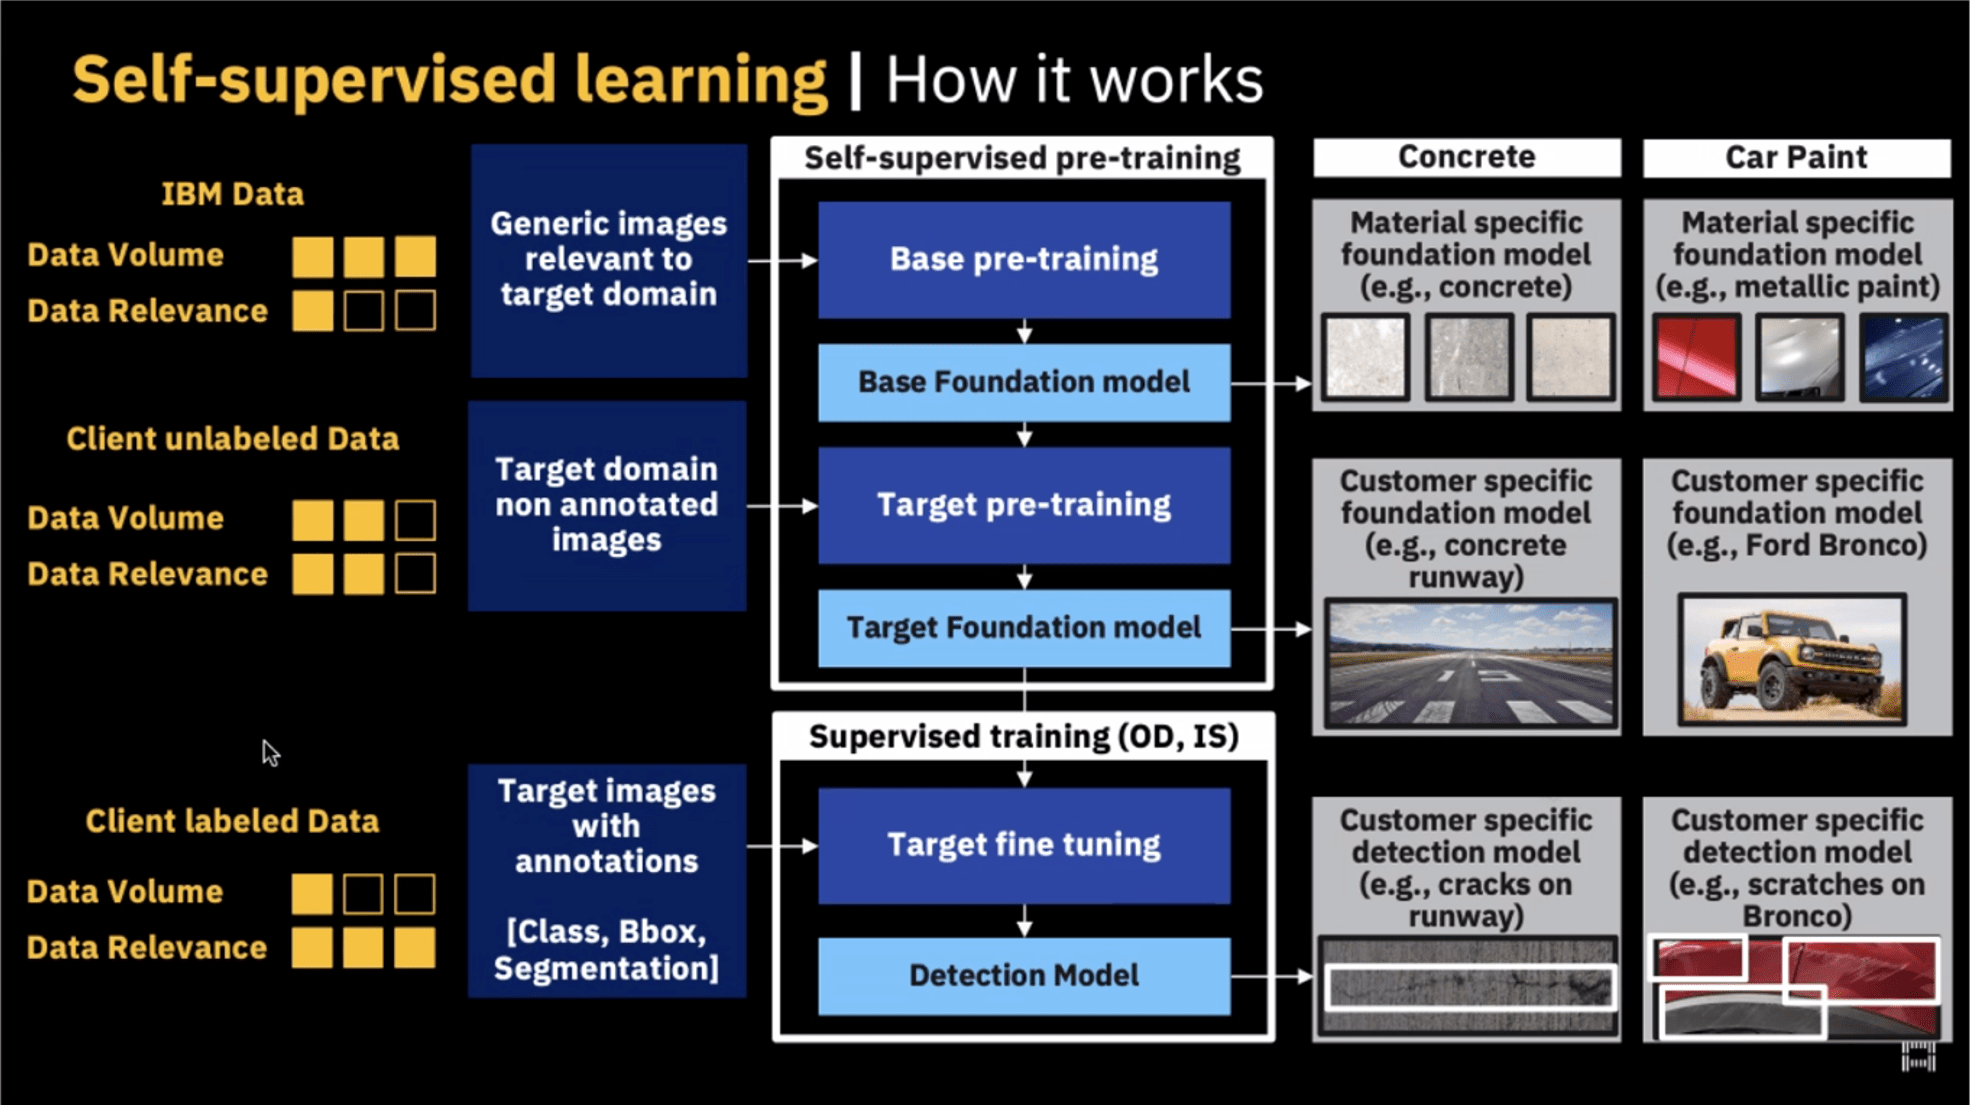 Fig.1 IBM’s Self-supervised learning model. Source: IBM